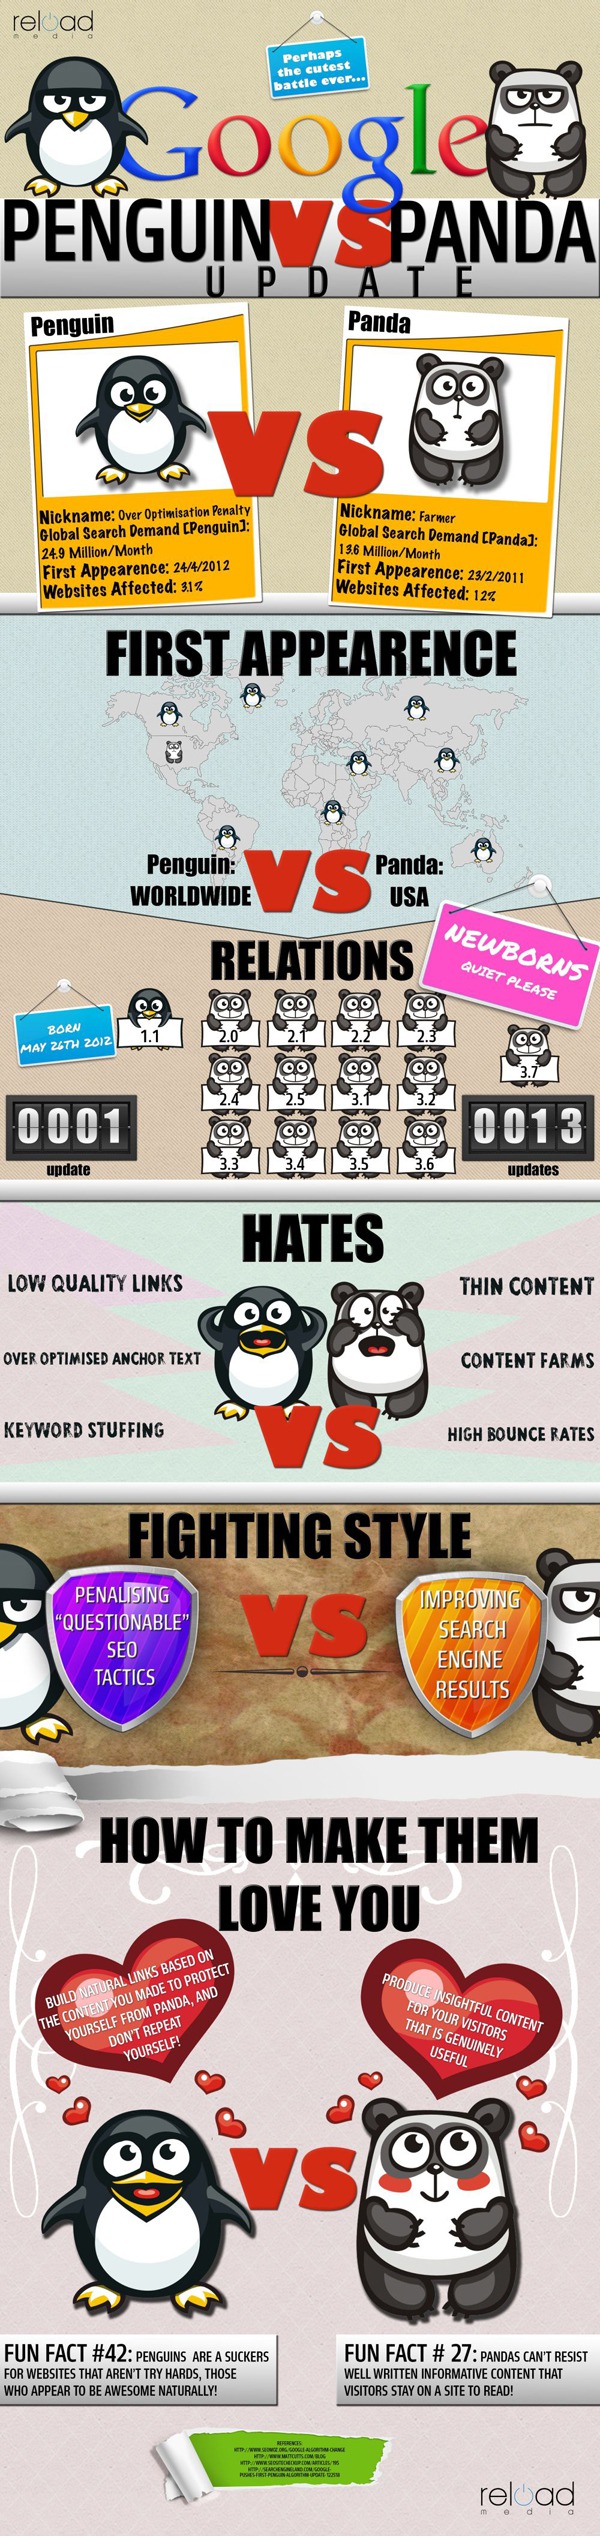 Penguin versus Panda infographic